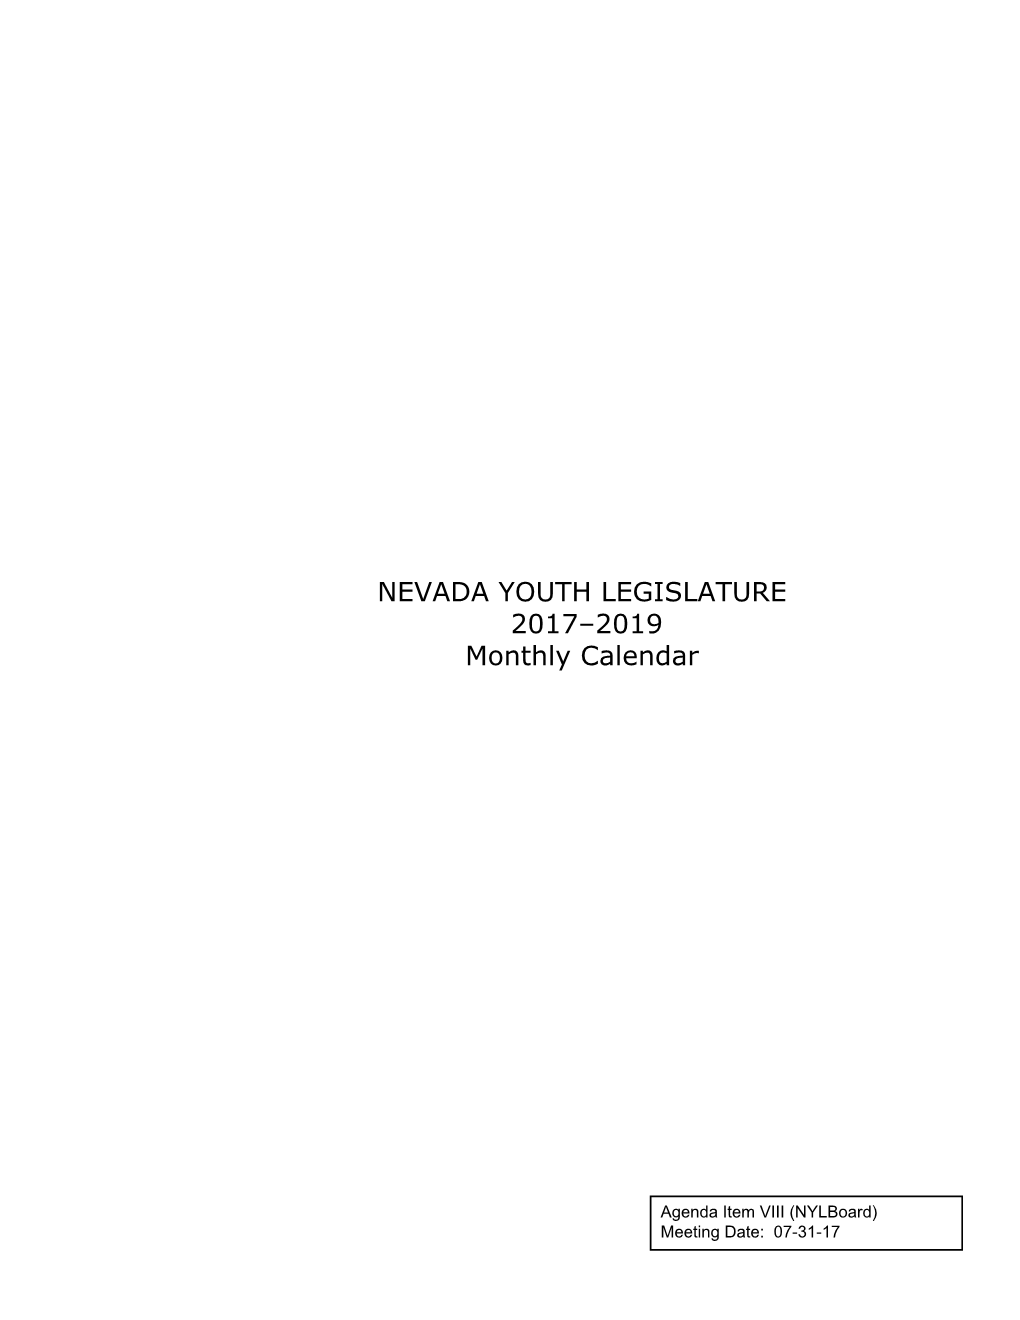 Agenda Item VIII—NYL 2017–2019 Monthly